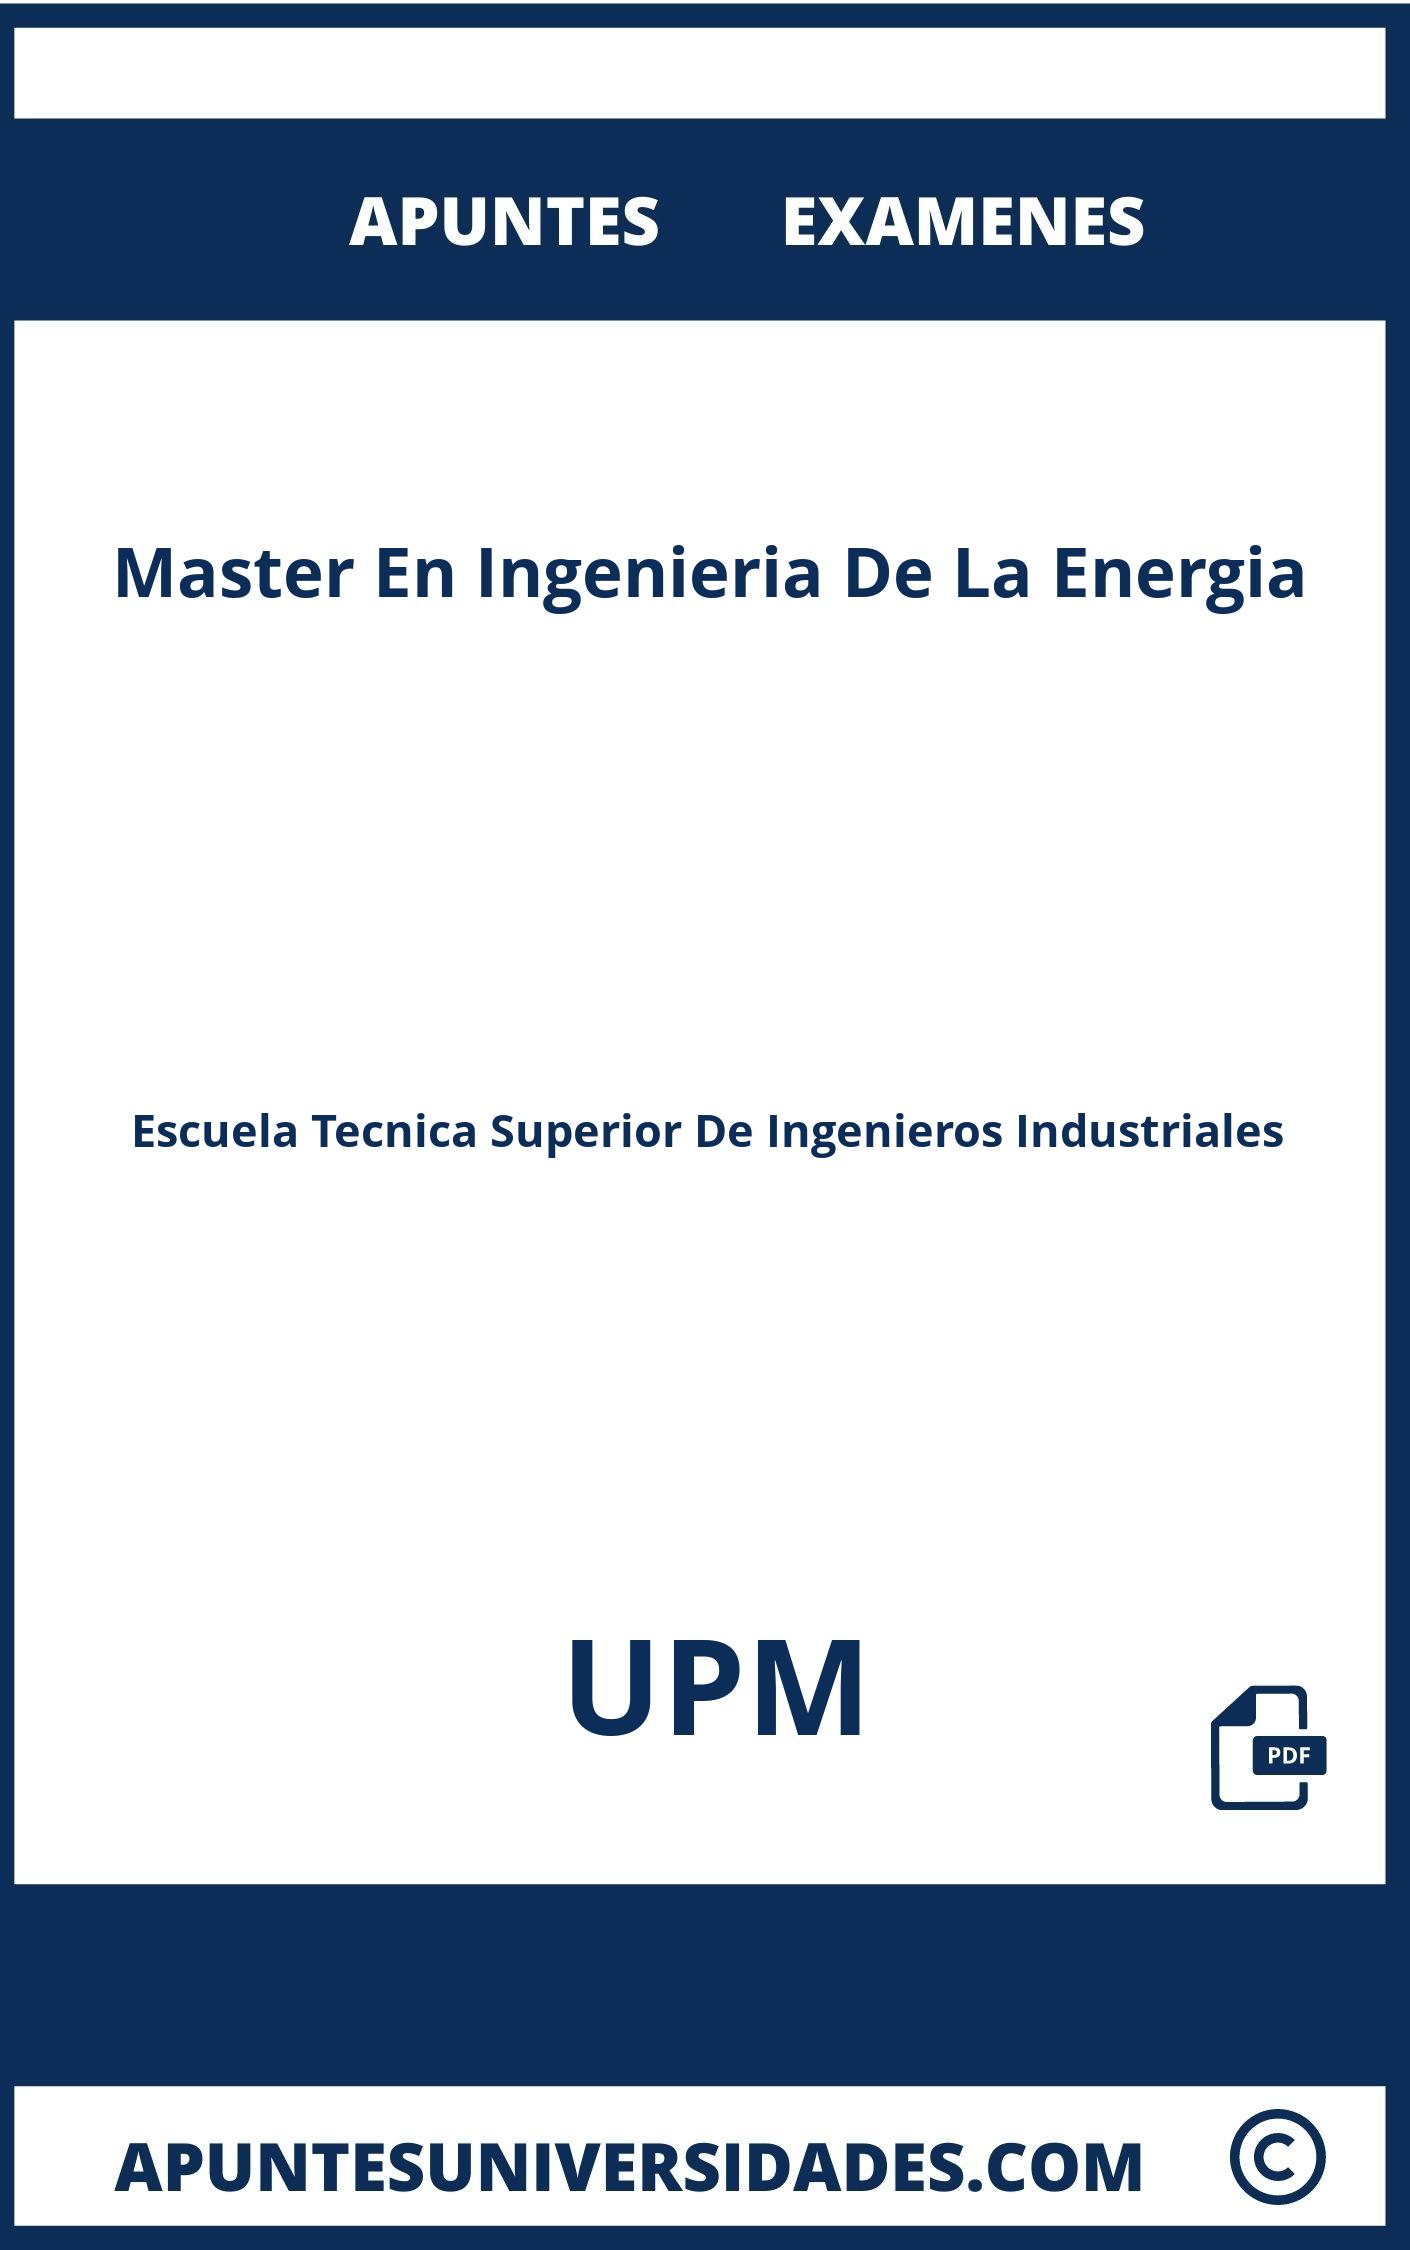 Apuntes Master En Ingenieria De La Energia UPM y Examenes